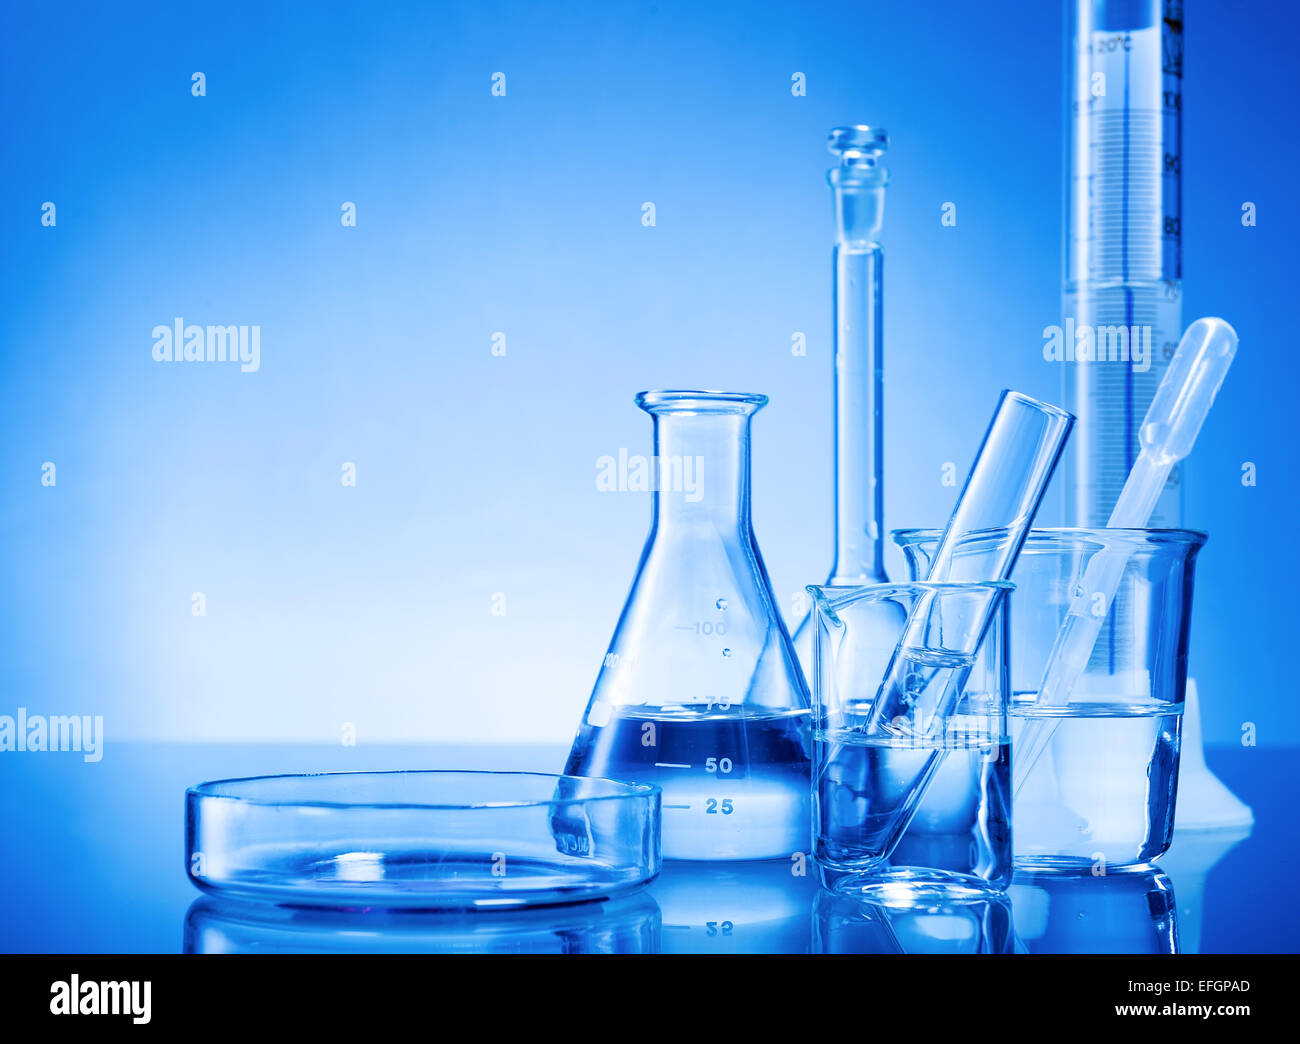 Laborgeräte, Glaskolben, Pipetten auf blauem Hintergrund Stockfoto